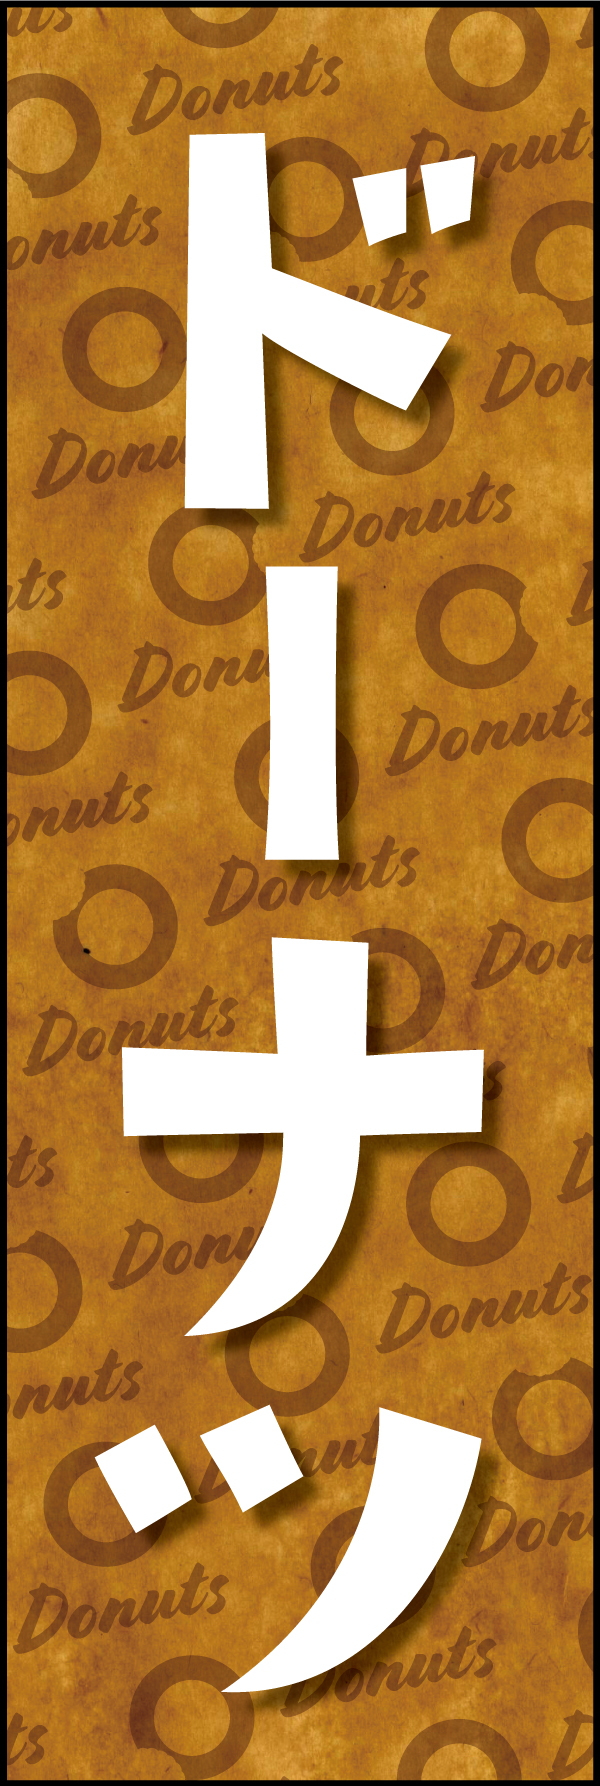 ドーナツ 190_01 「ドーナツ」ののぼりです。クラフト感ある包み紙のような背景デザインと文字で、ヘルシーでオーガニックな雰囲気を演出しました。（Y.M）